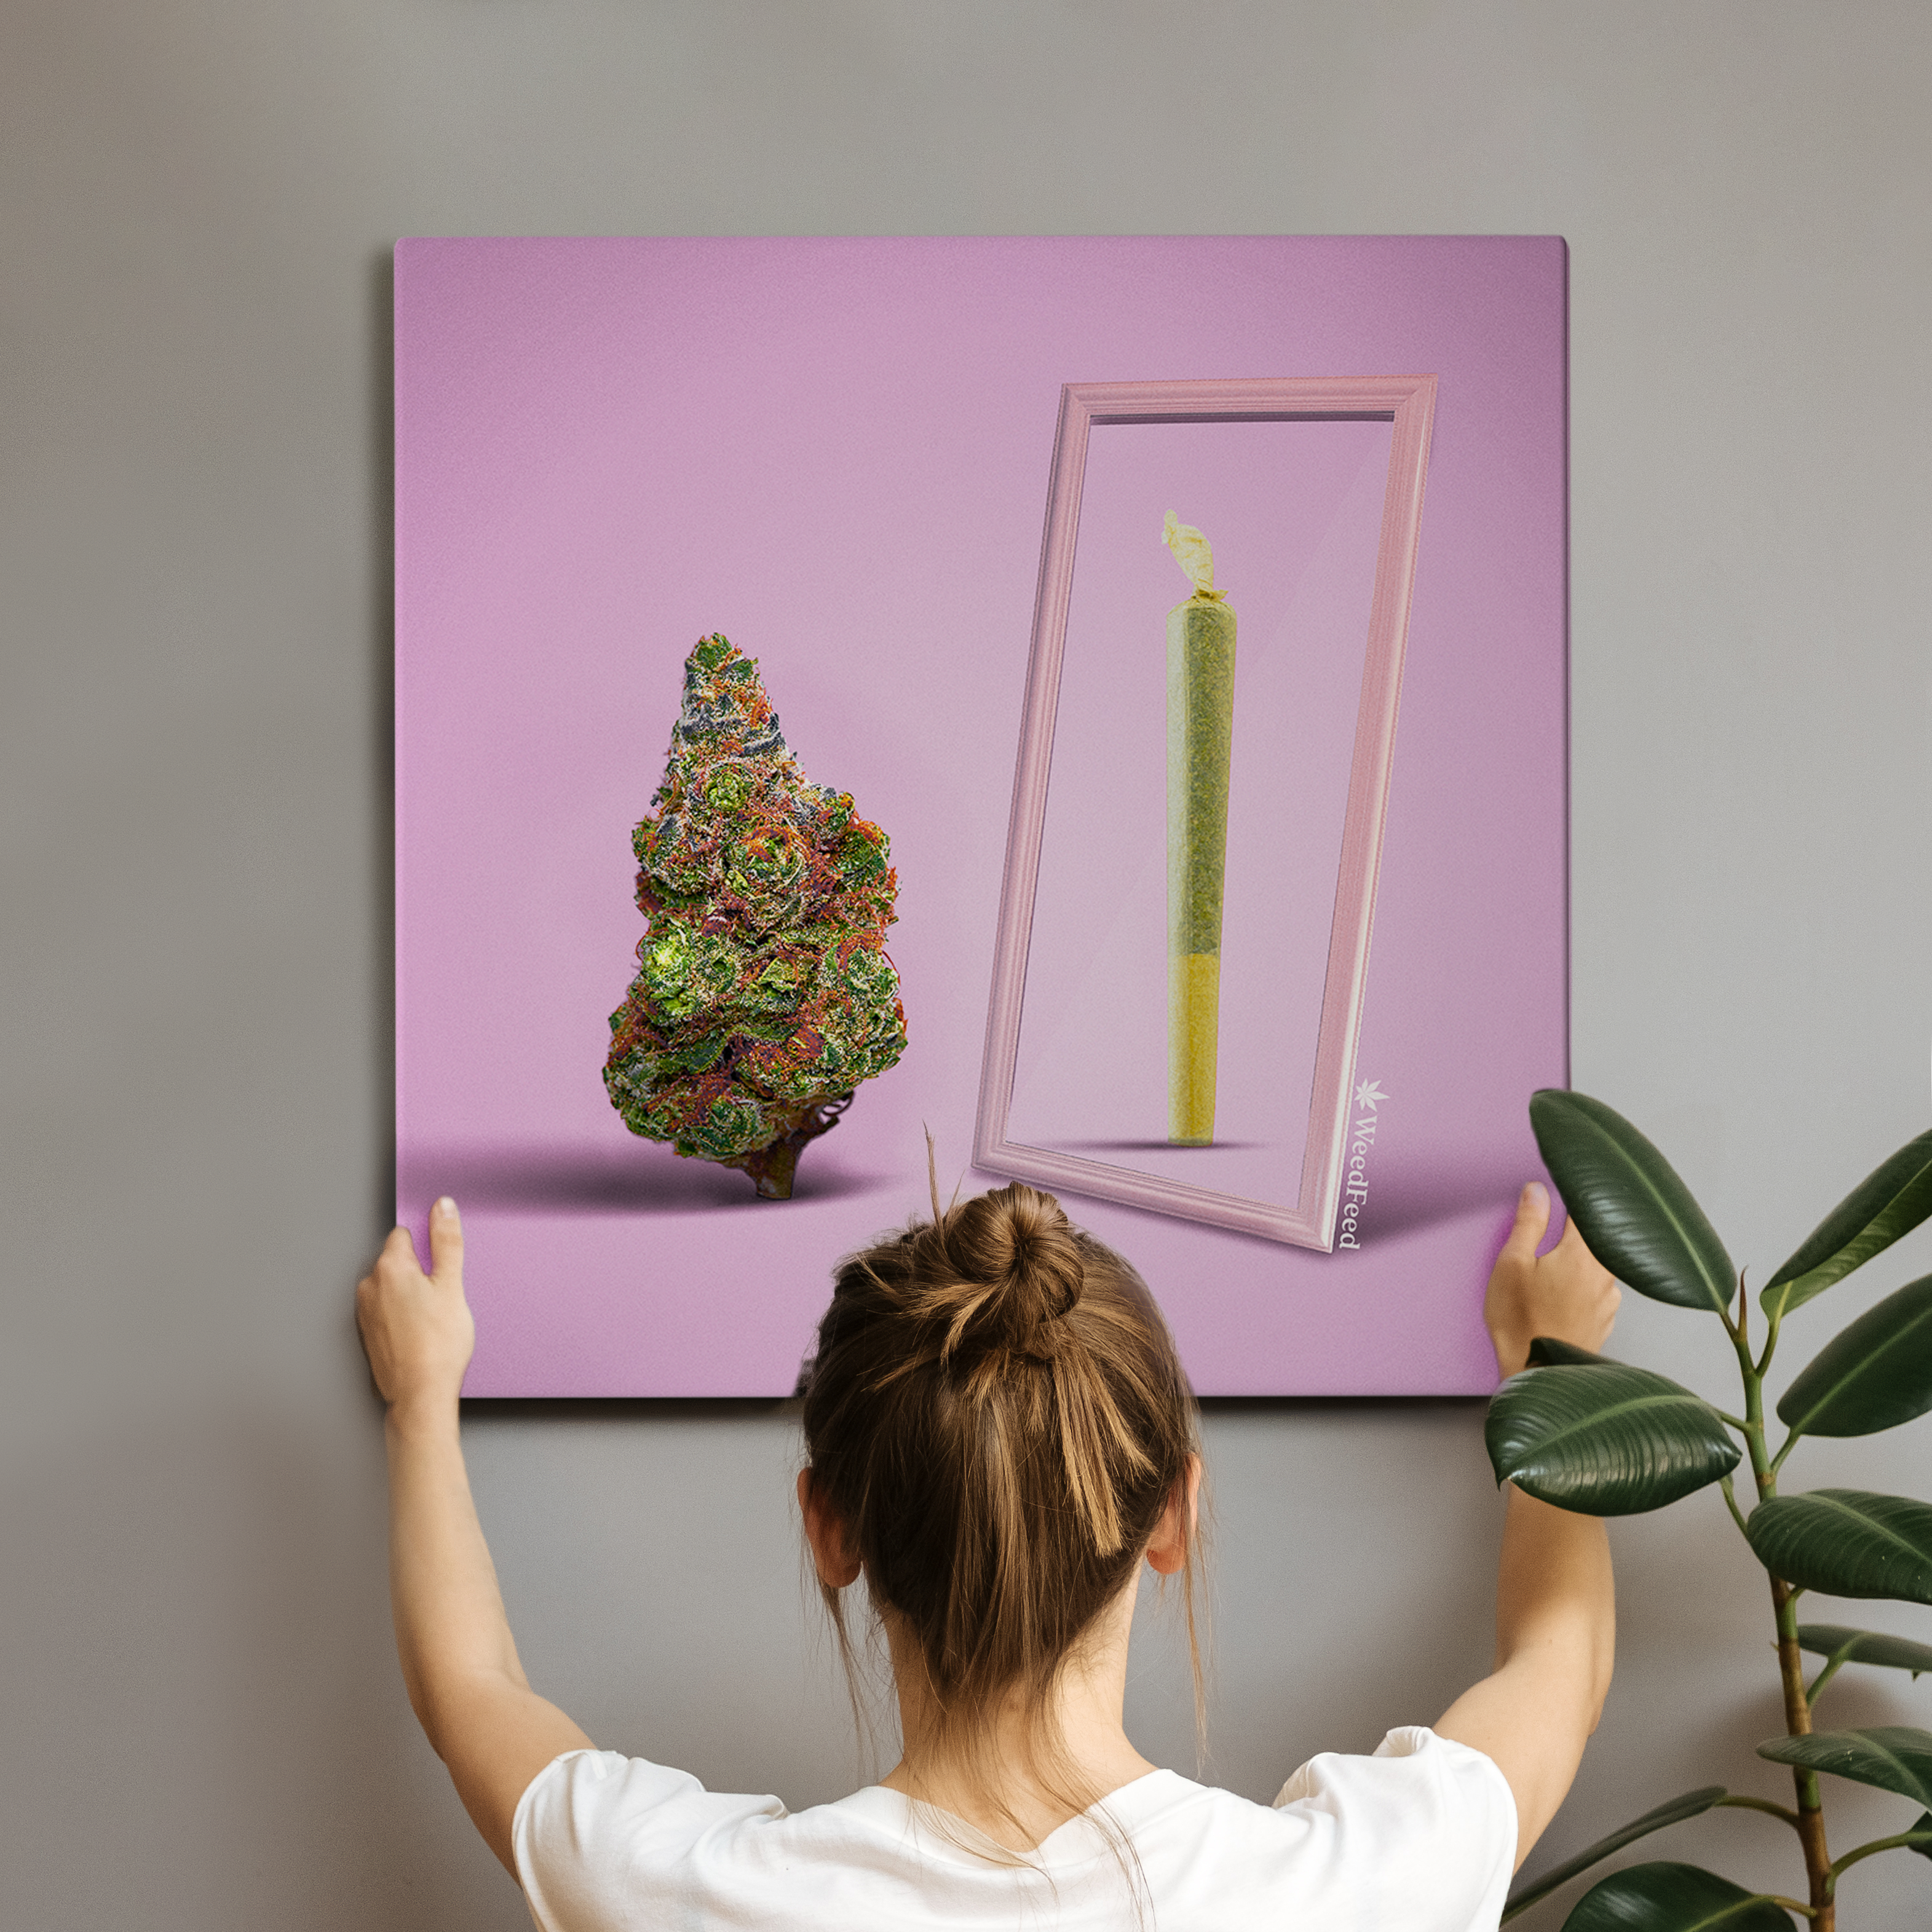 weed art mirror joint weed marijuana cannabis art gift